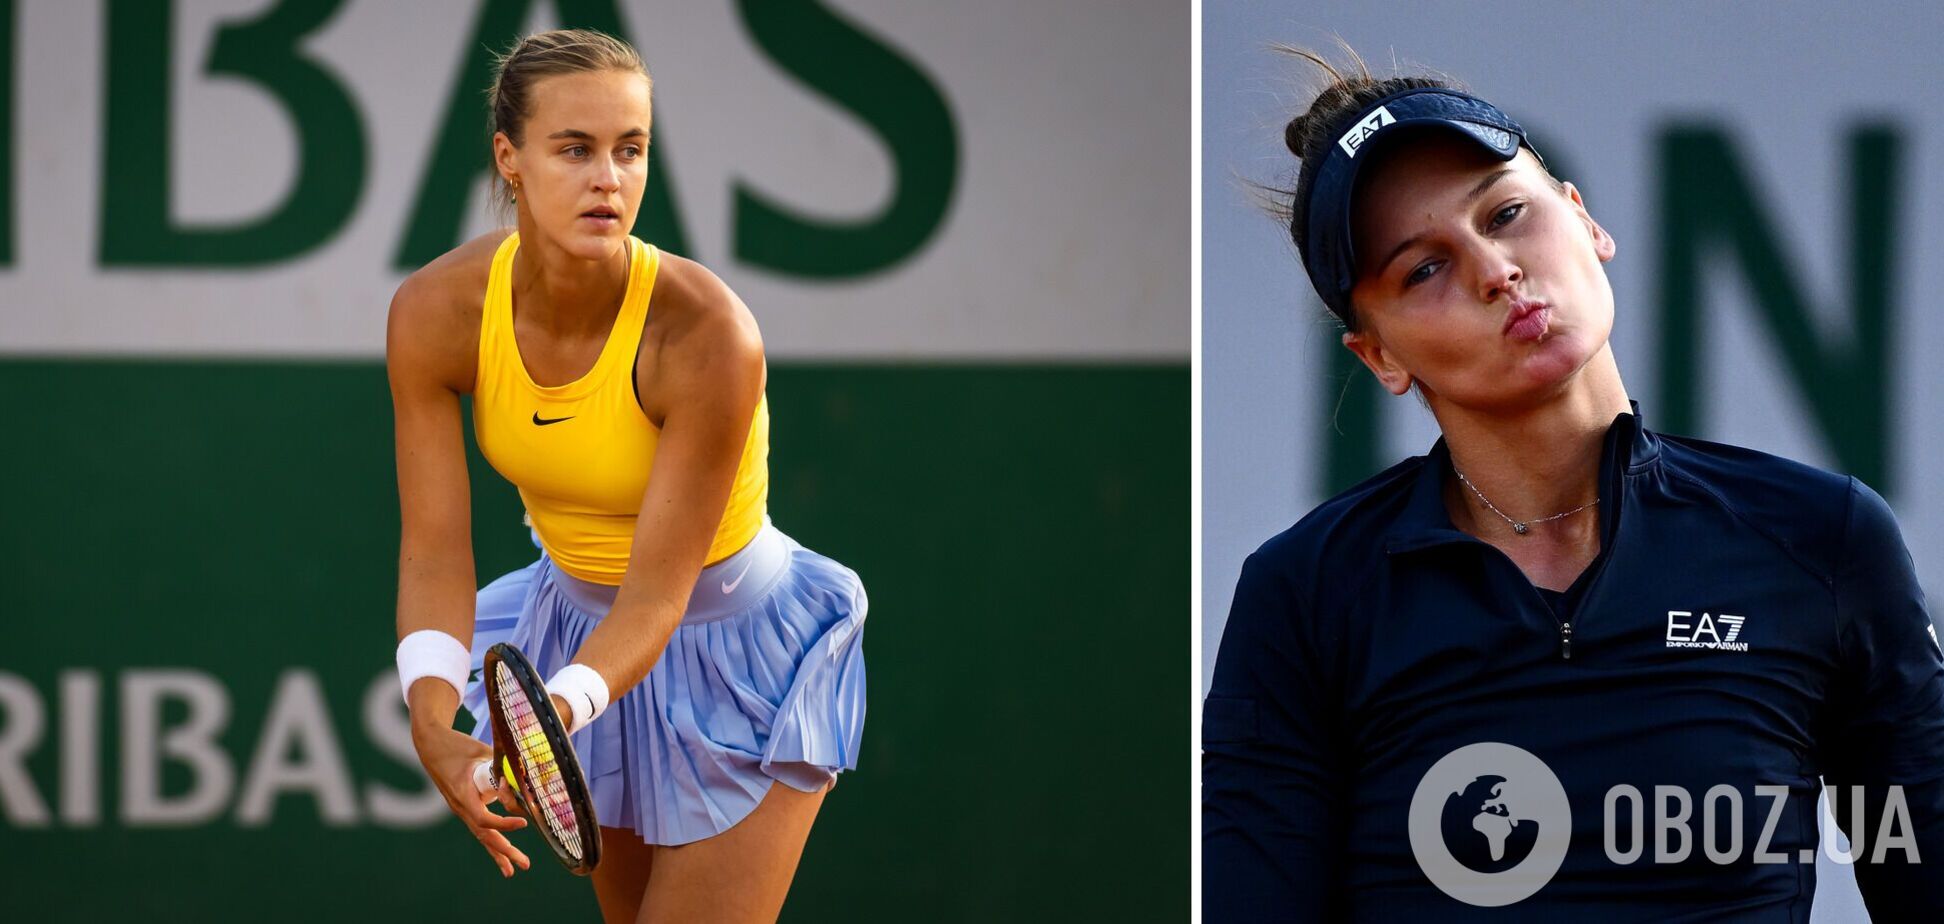 Теннисистка оделась в цвета Украины и сенсационно разгромила вторую ракетку России на Roland Garros